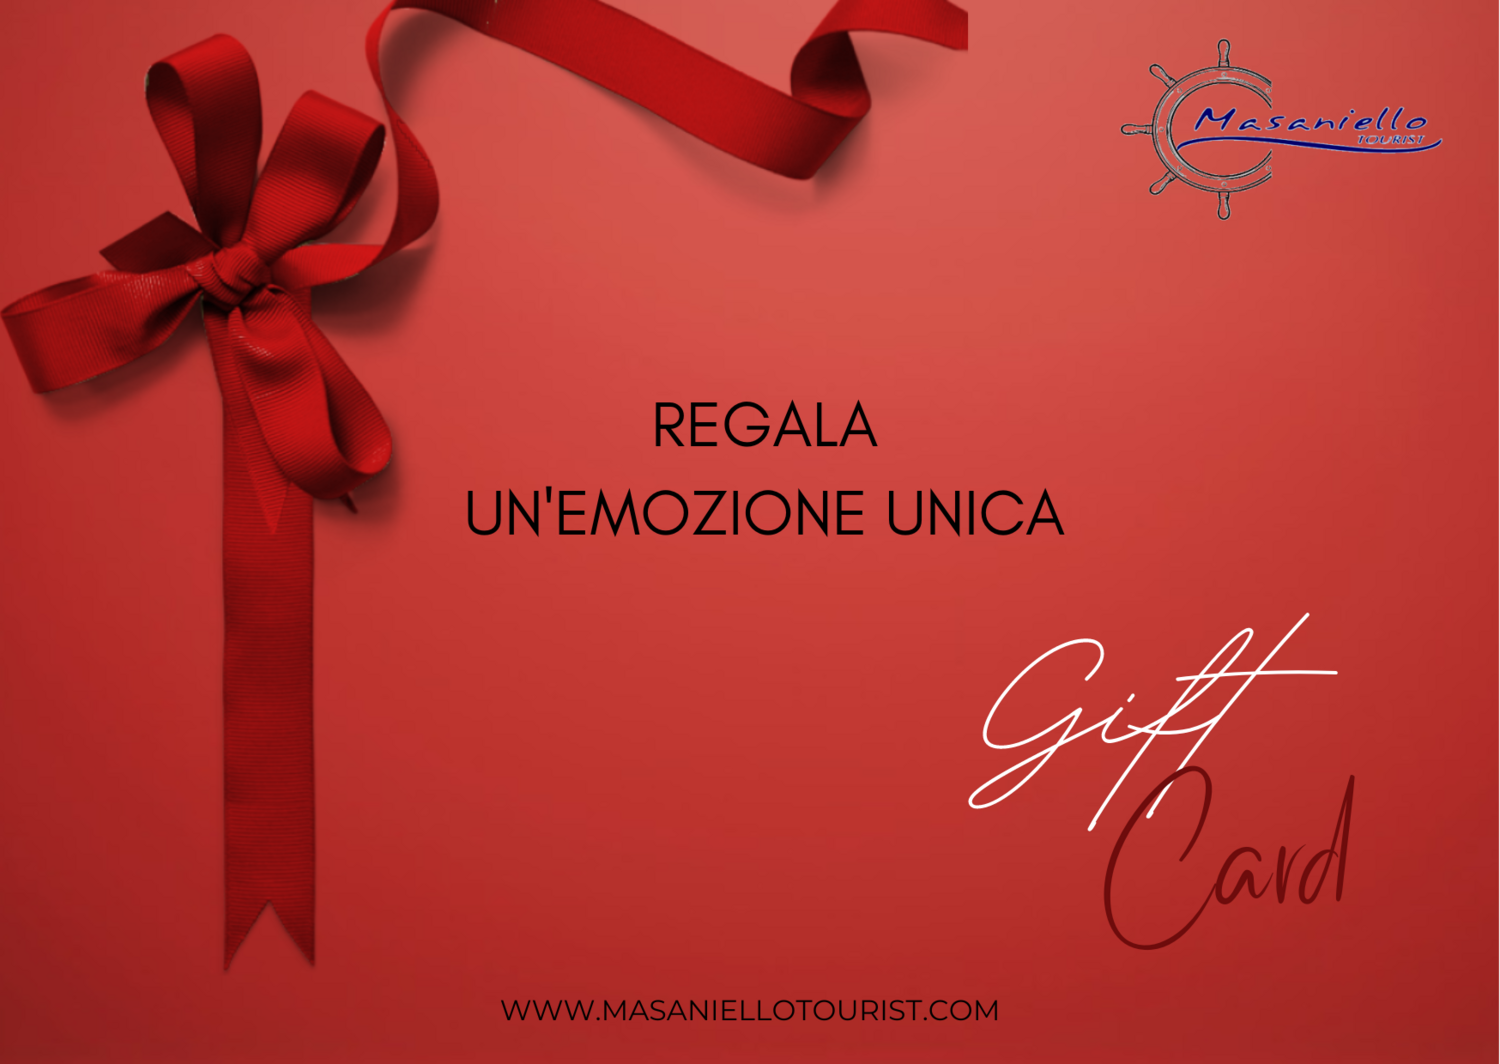 Gift Card Masaniello